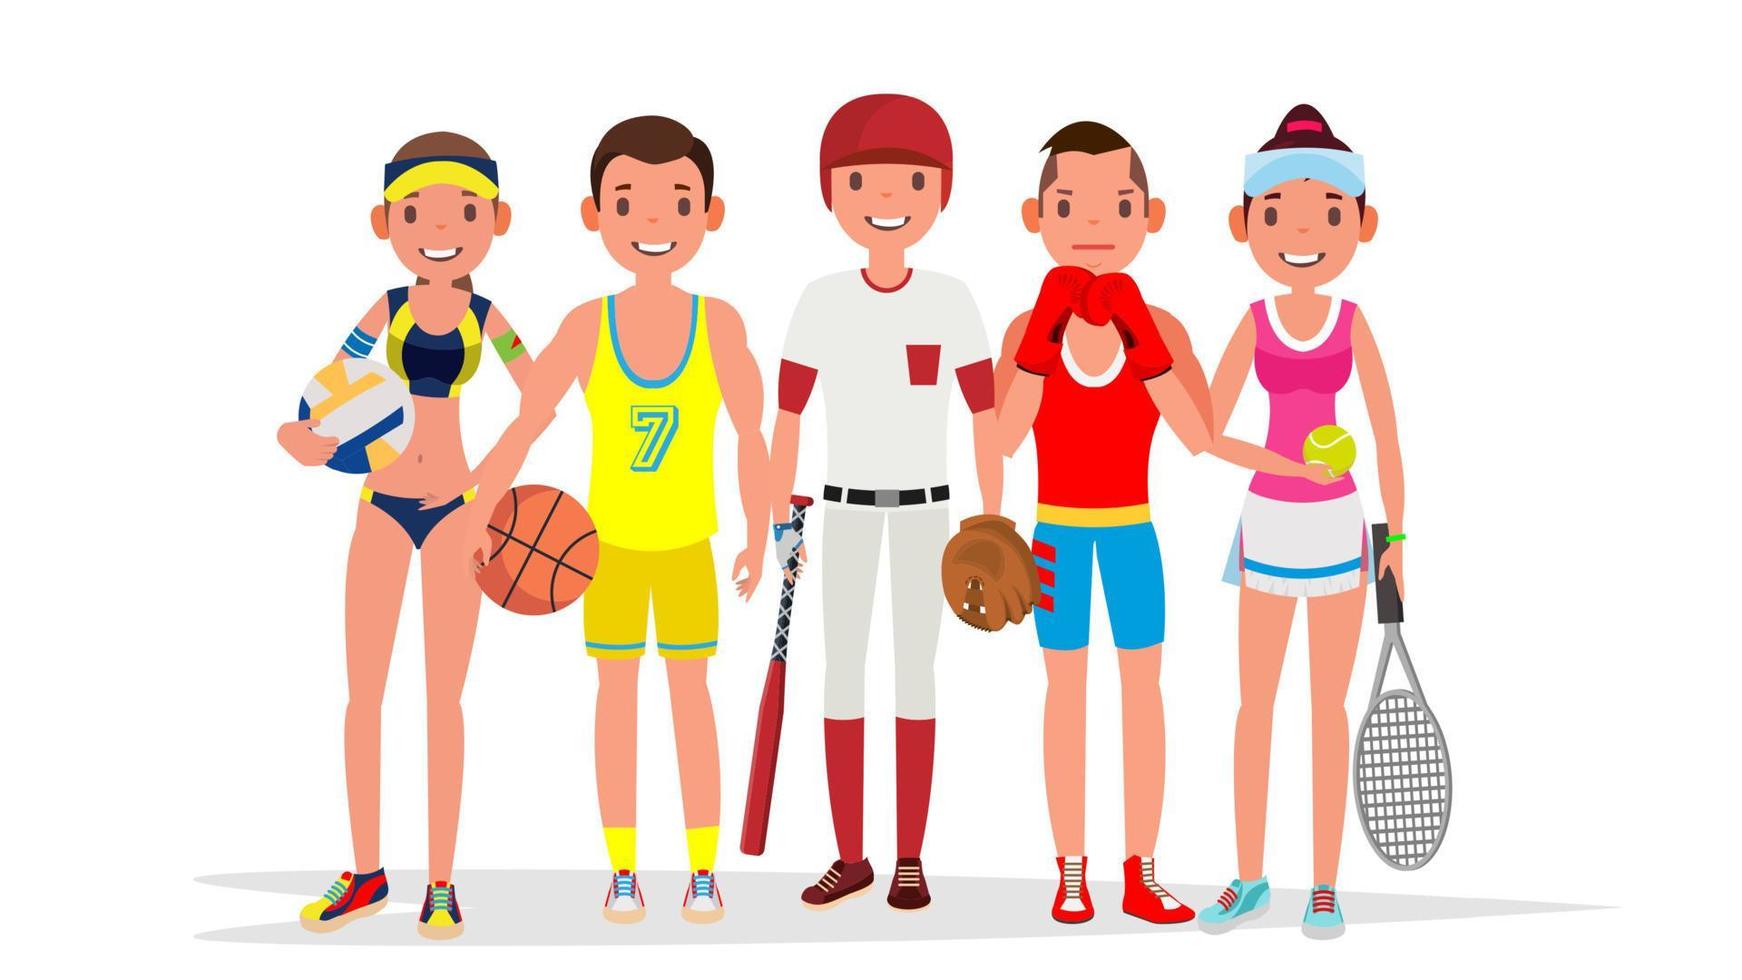 Sommersport-Vektor. gruppe von spielern im boxen, basketball, volleyball, baseball. lokalisiert auf weißer flacher karikaturillustration vektor